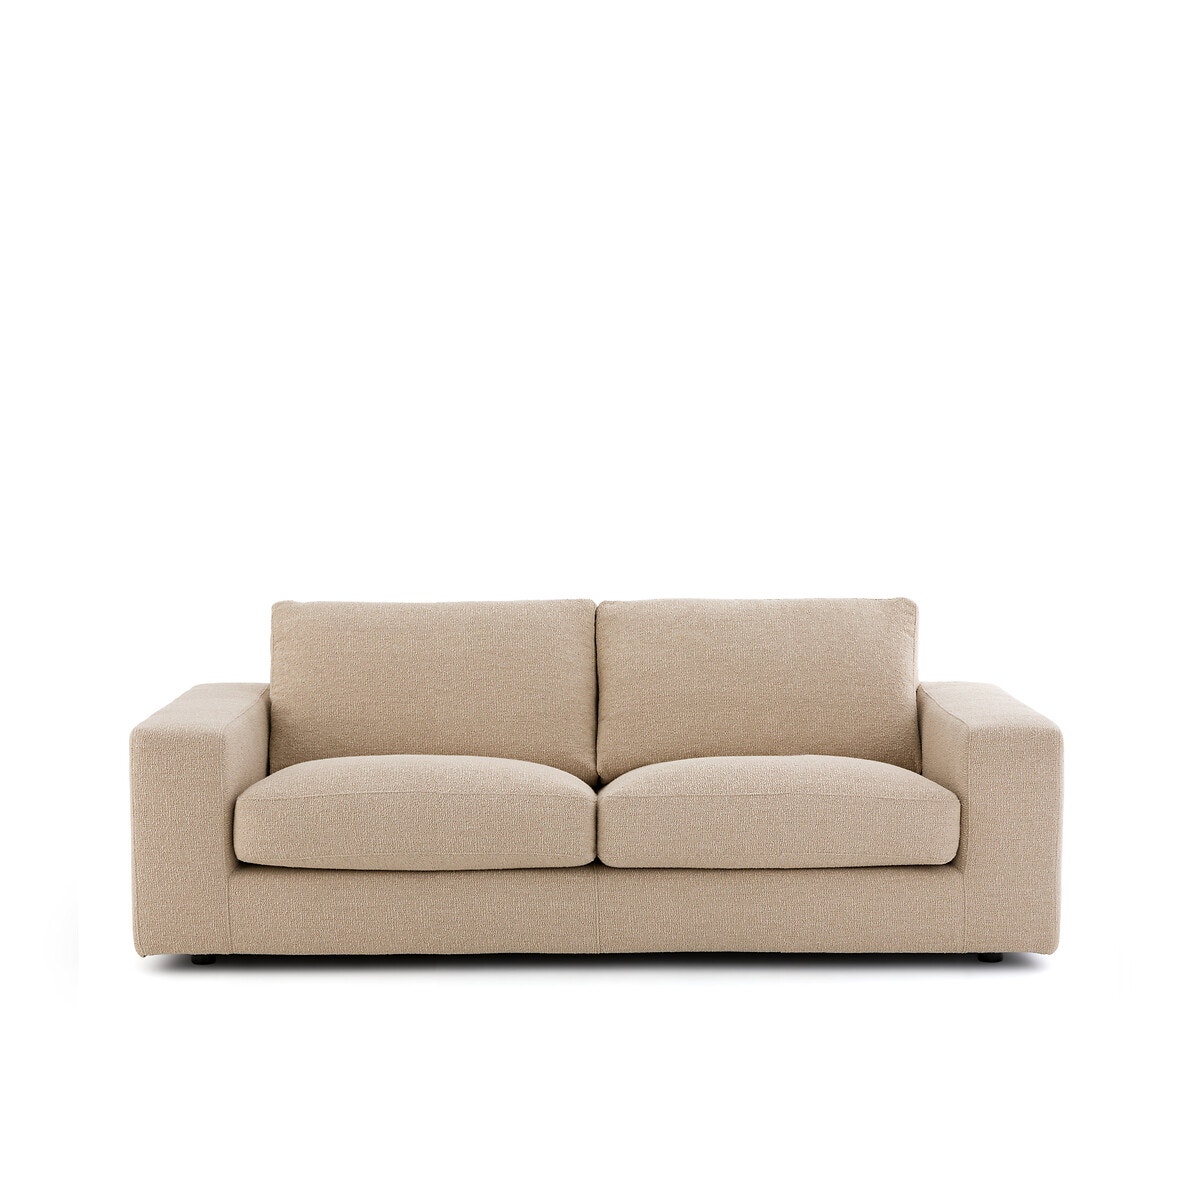 Τριθέσιος καναπές με μπουκλέ ταπετσαρία, Skander